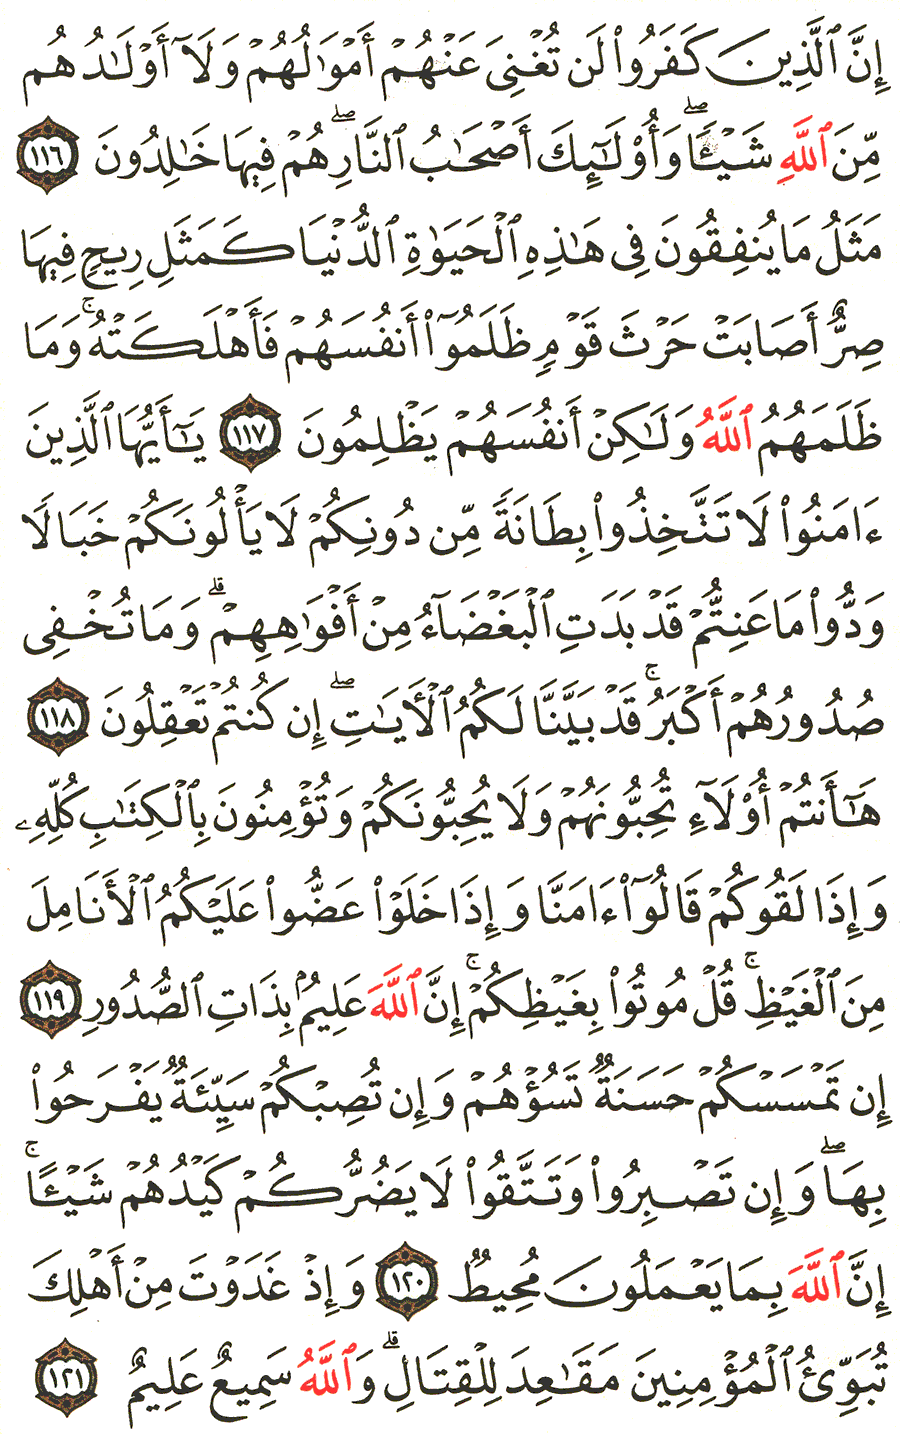 الصفحة 65 من القرآن الكريم